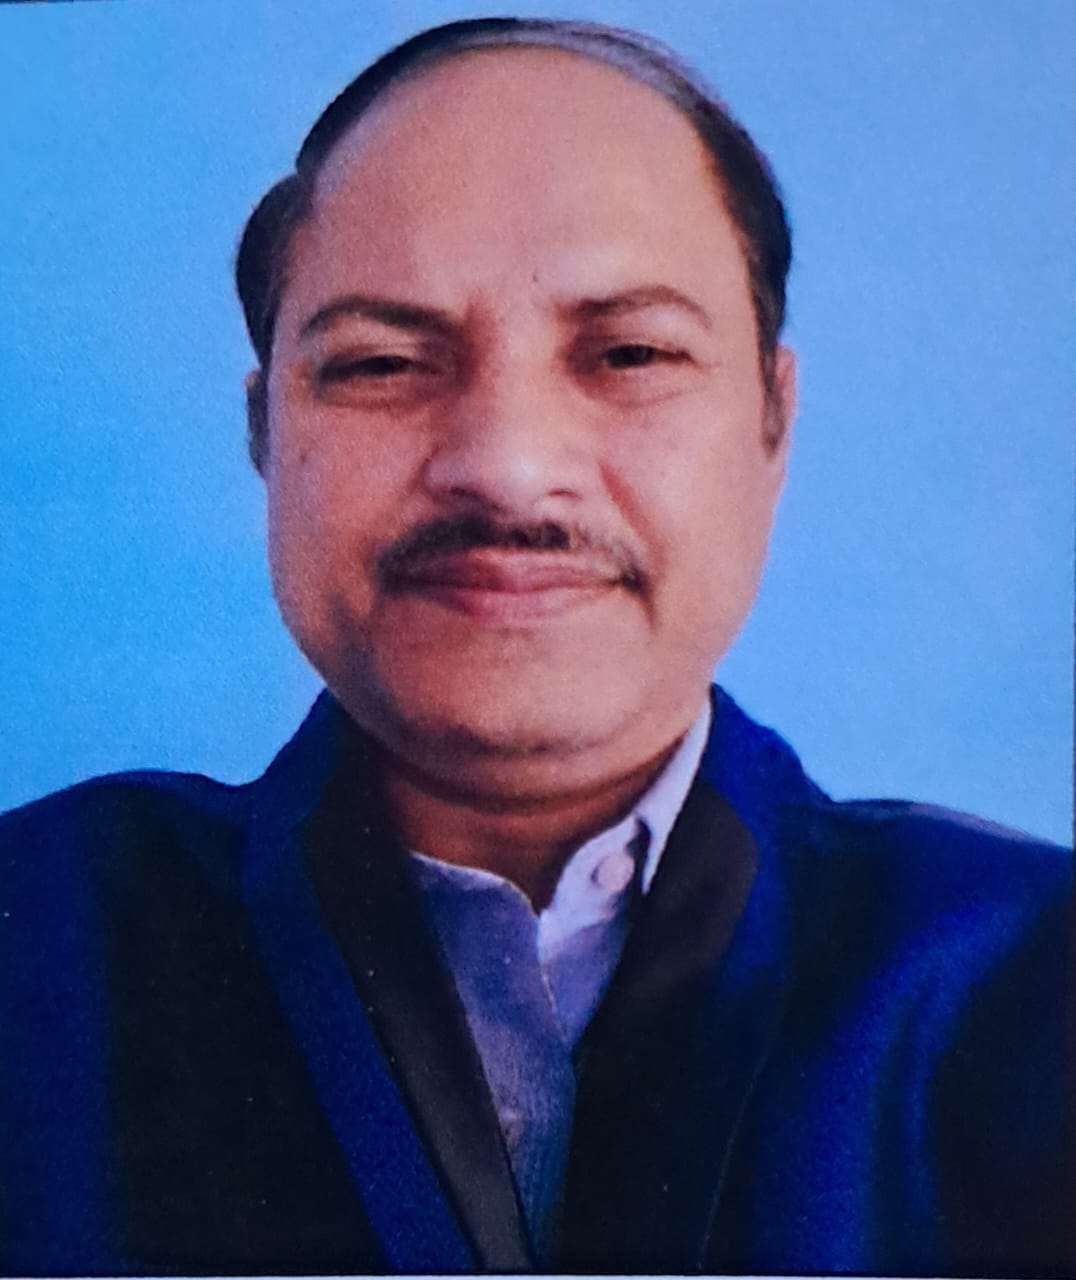 राजकीय महाविद्यालय कण्वघाटी कोटद्वार के असिस्टेंट प्रोफेसर डॉ अनुराग शर्मा को मिला बेस्ट टीचर अवॉर्ड 2022 ,,,।